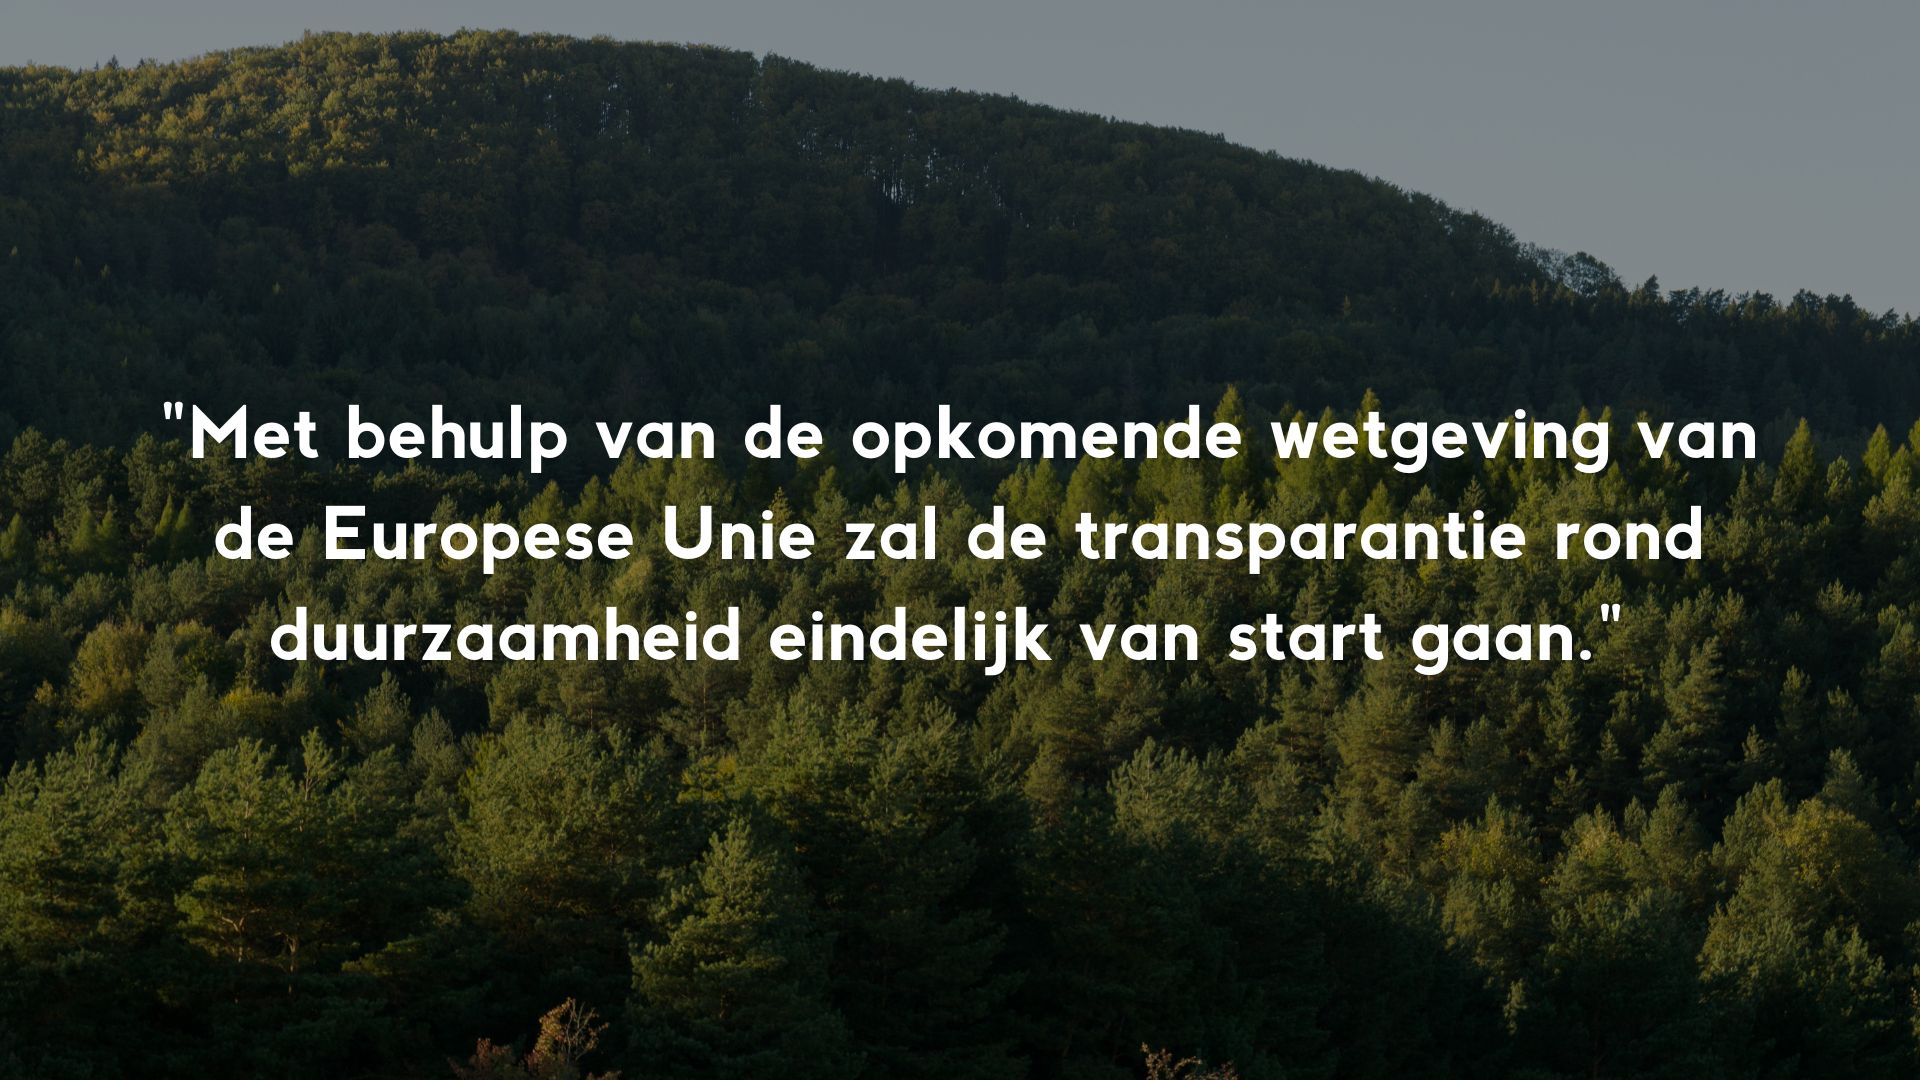 halve luchtfoto bos met citaat over transparantie in duurzaamheid door EU-wetgeving